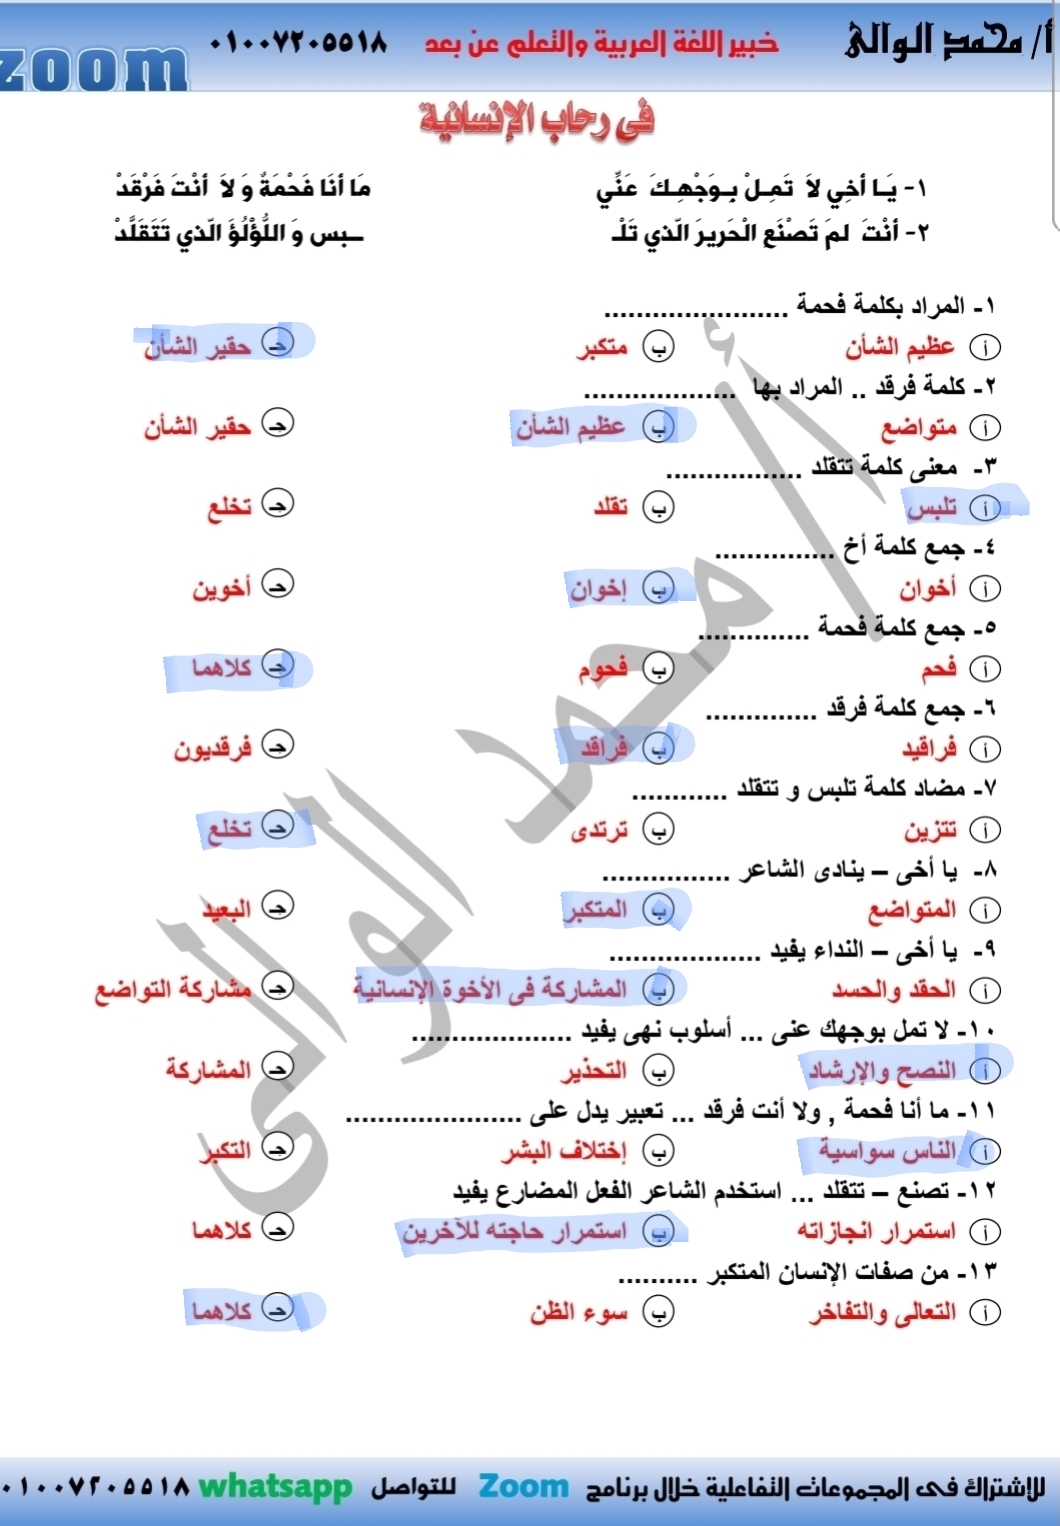 مراجعة درس فى رحاب الإنسانية لغة عربية للصف السادس الإبتدائى الترم الثانى